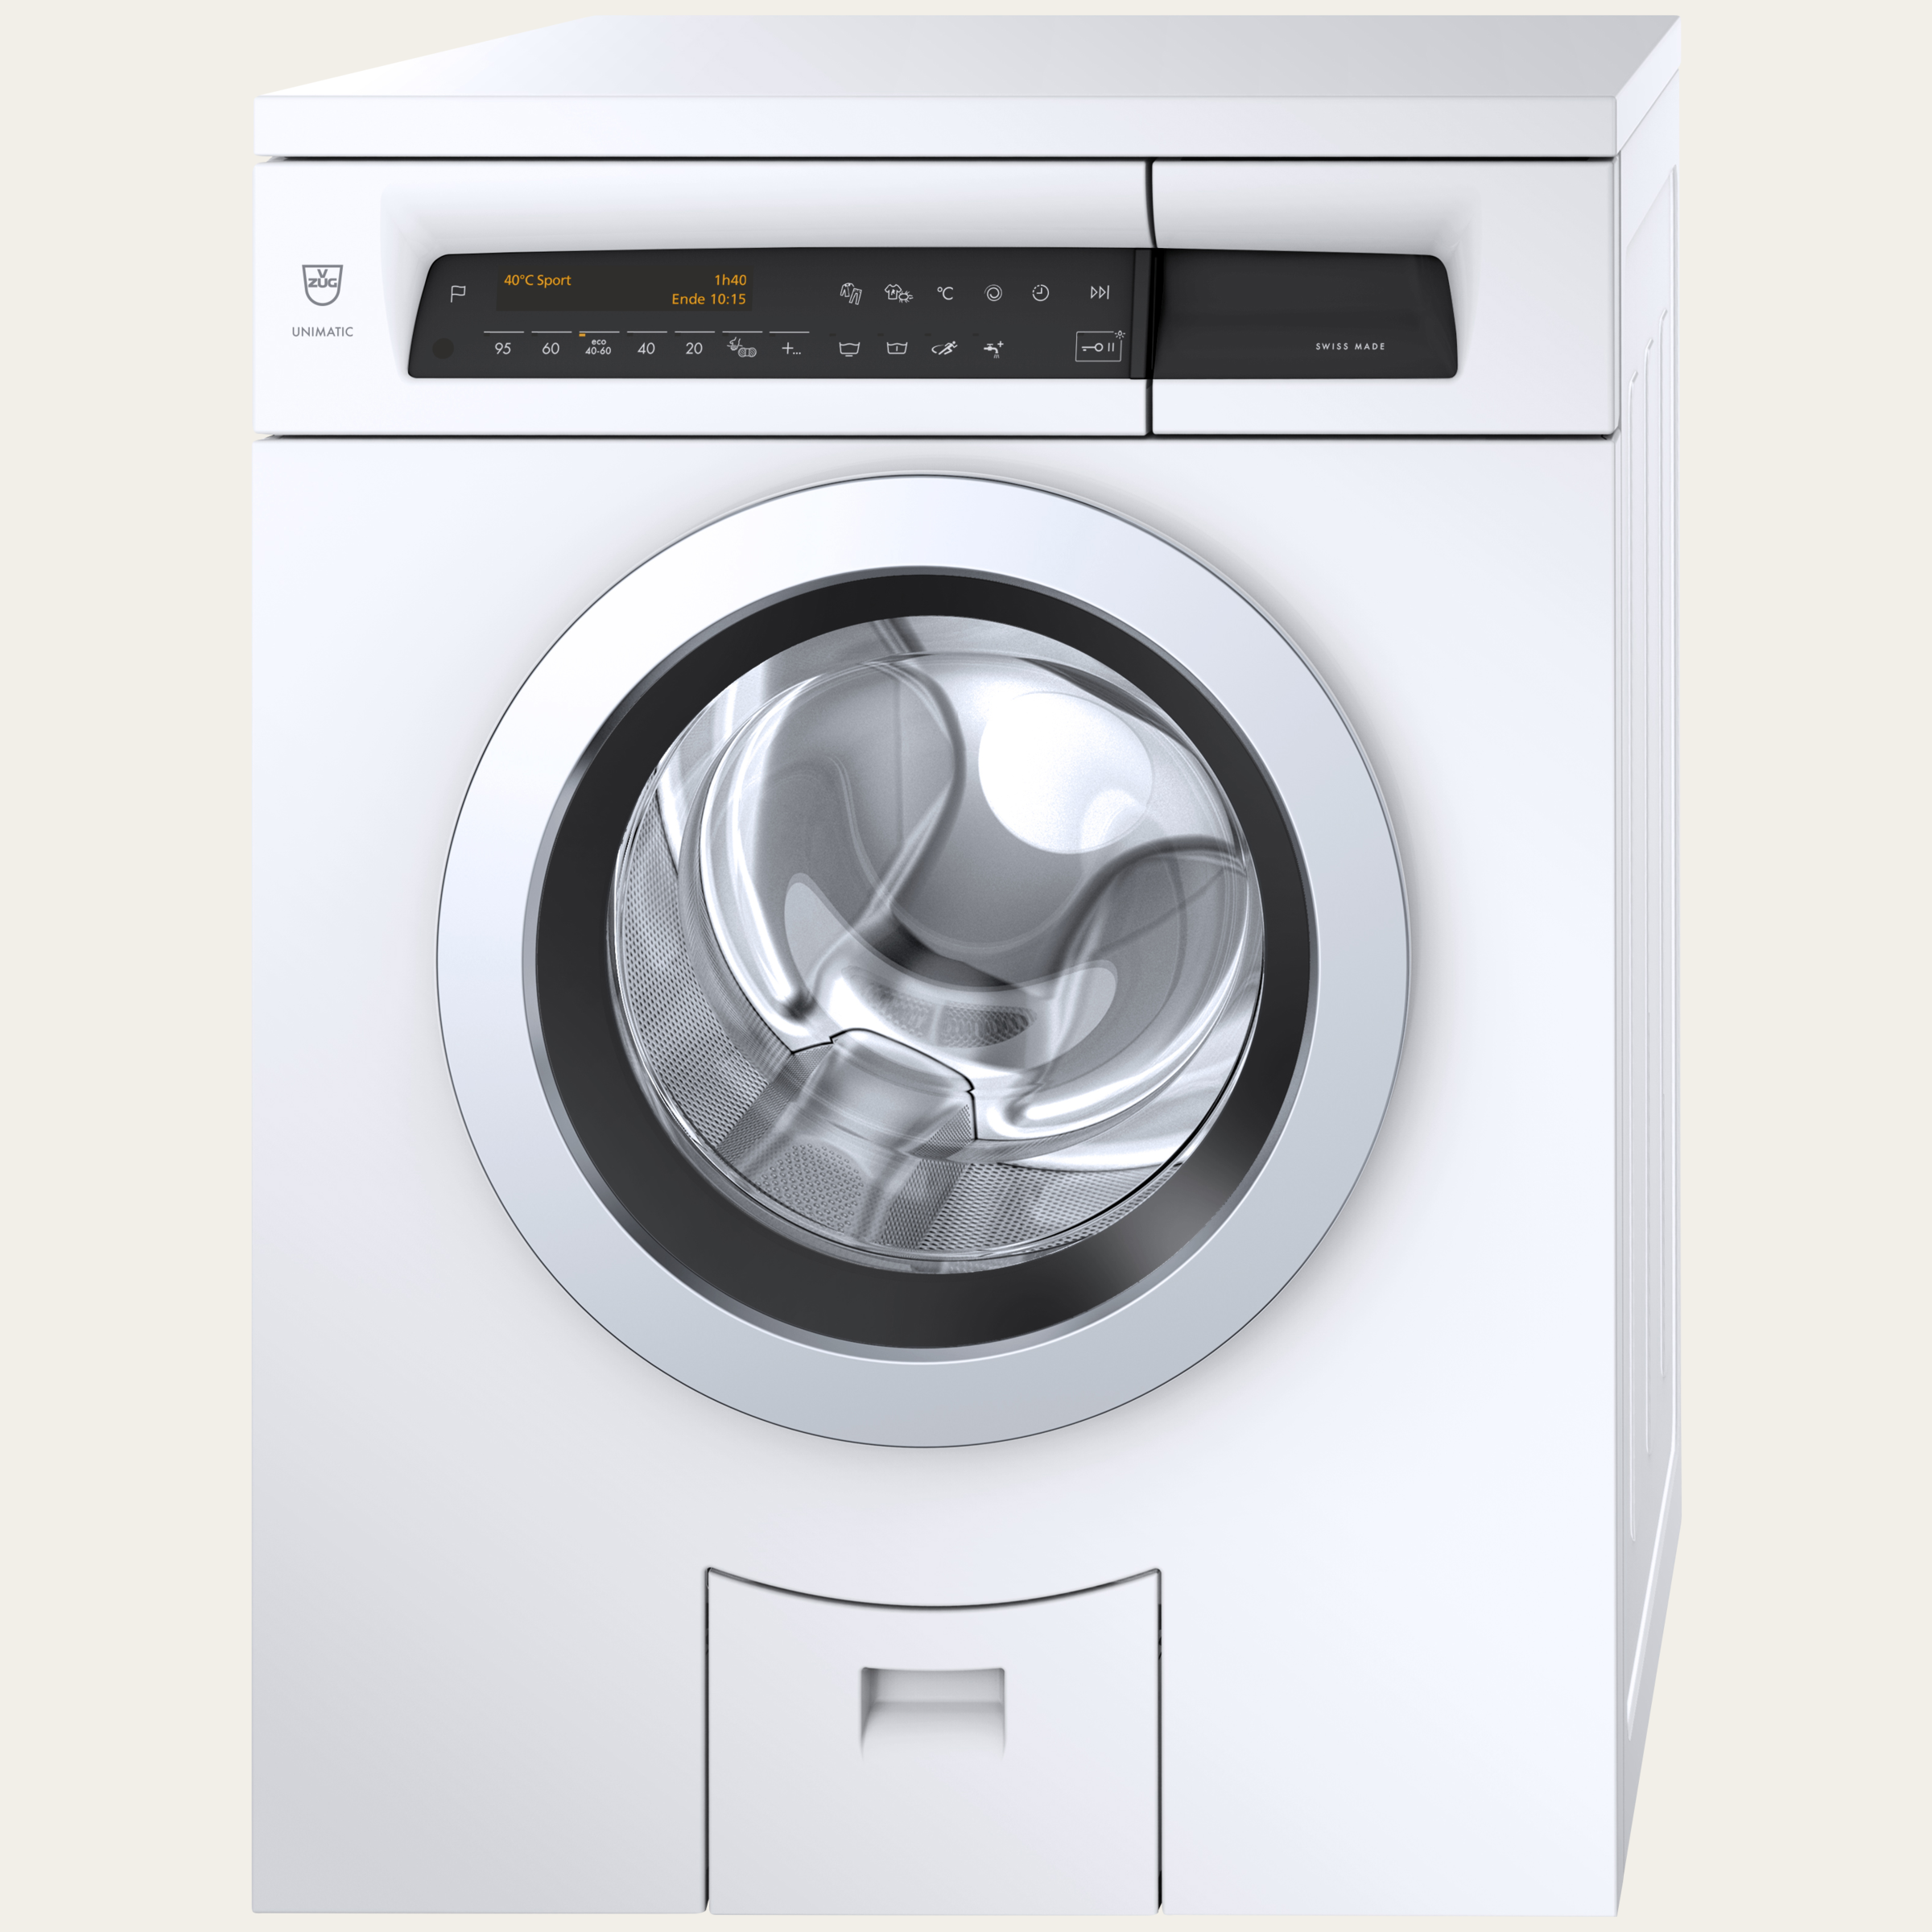 V-ZUG Machine à laver UnimaticLavage V4000, Charnière: gauche, Design porte: ChromeClass, Texte clair, Fonction spéciale raccord eau chaude, Capacité nominale: 8 kg